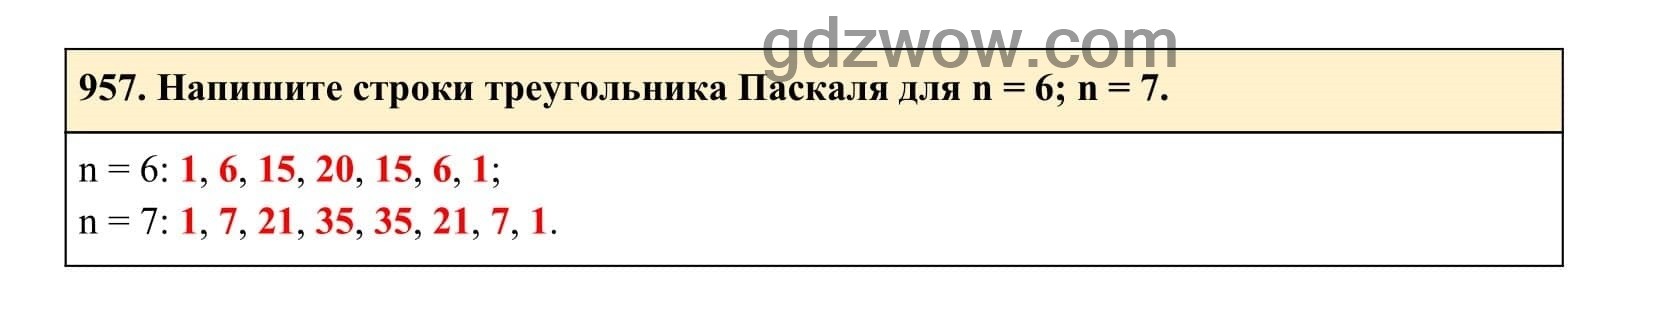 Упражнение 957 - ГДЗ по Алгебре 7 класс Учебник Макарычев (решебник) - GDZwow